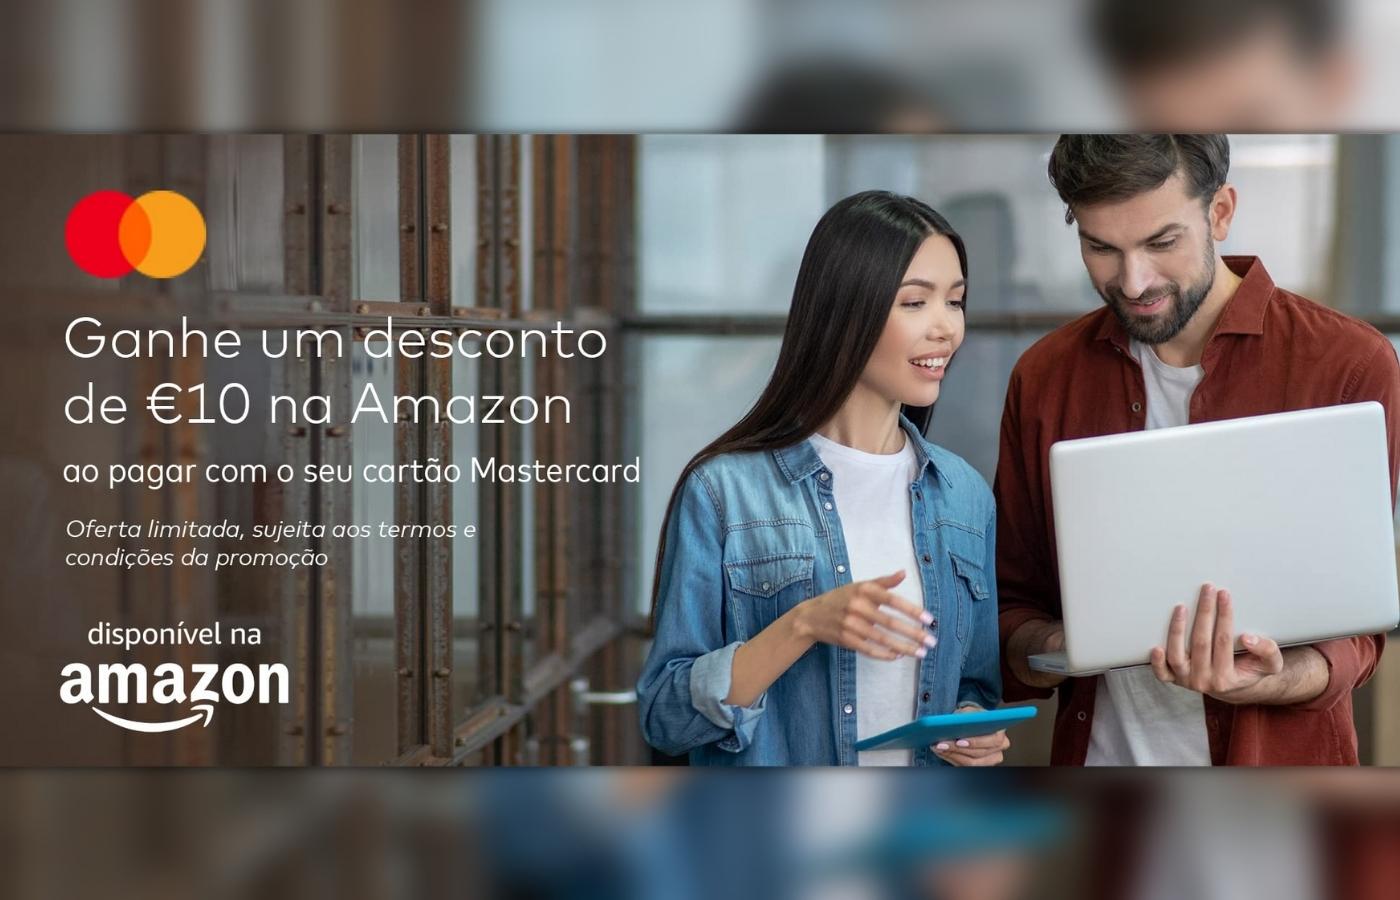 Amazon - Desconto Mastercard